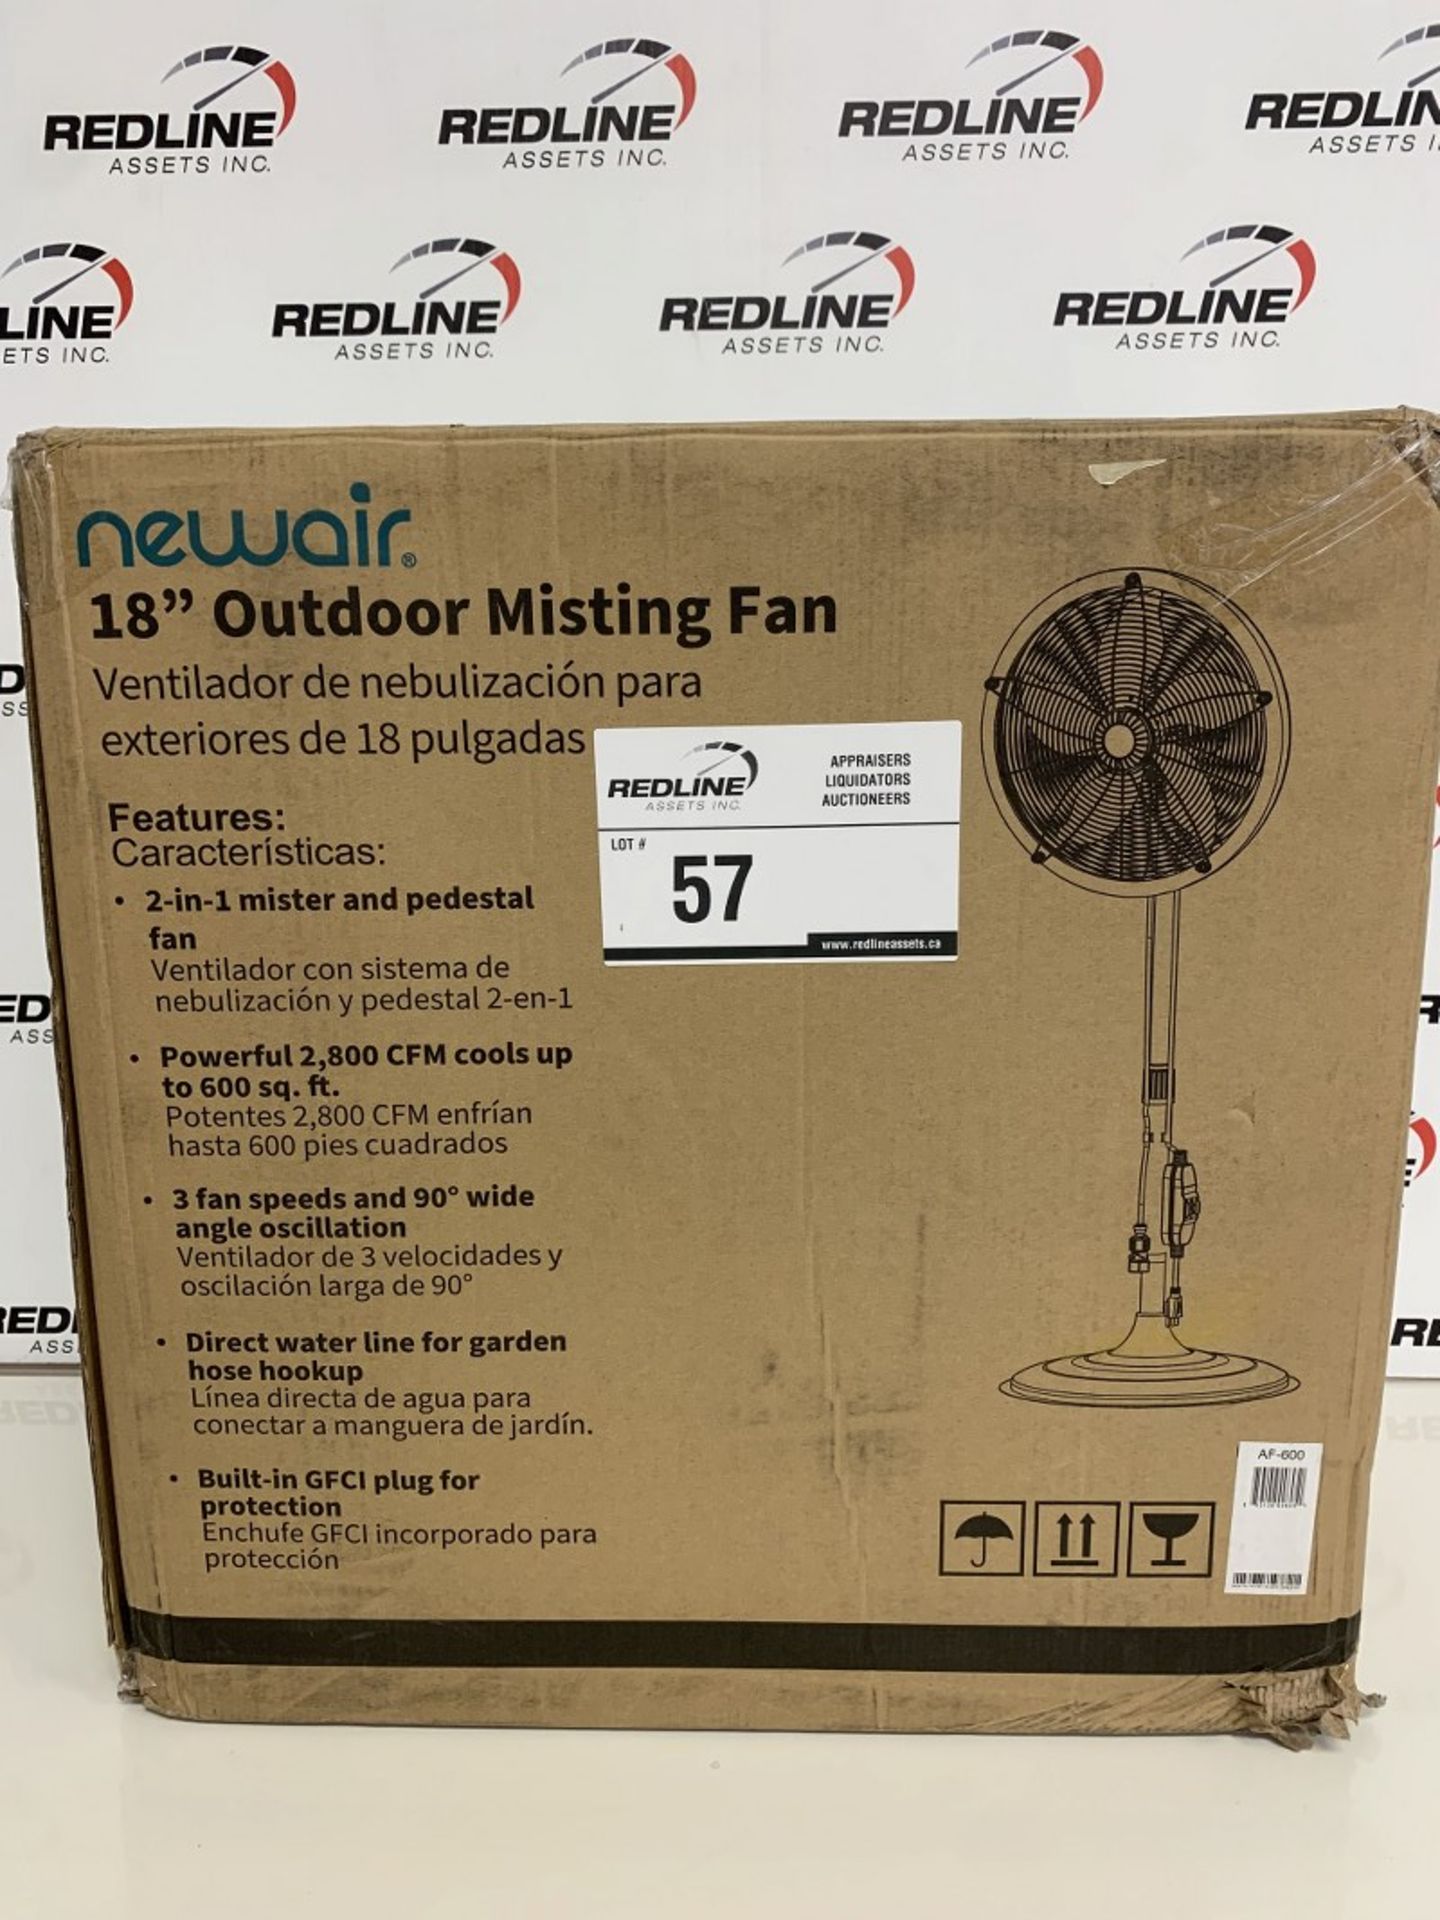 Newair - 18" Outdoor Misting Fan